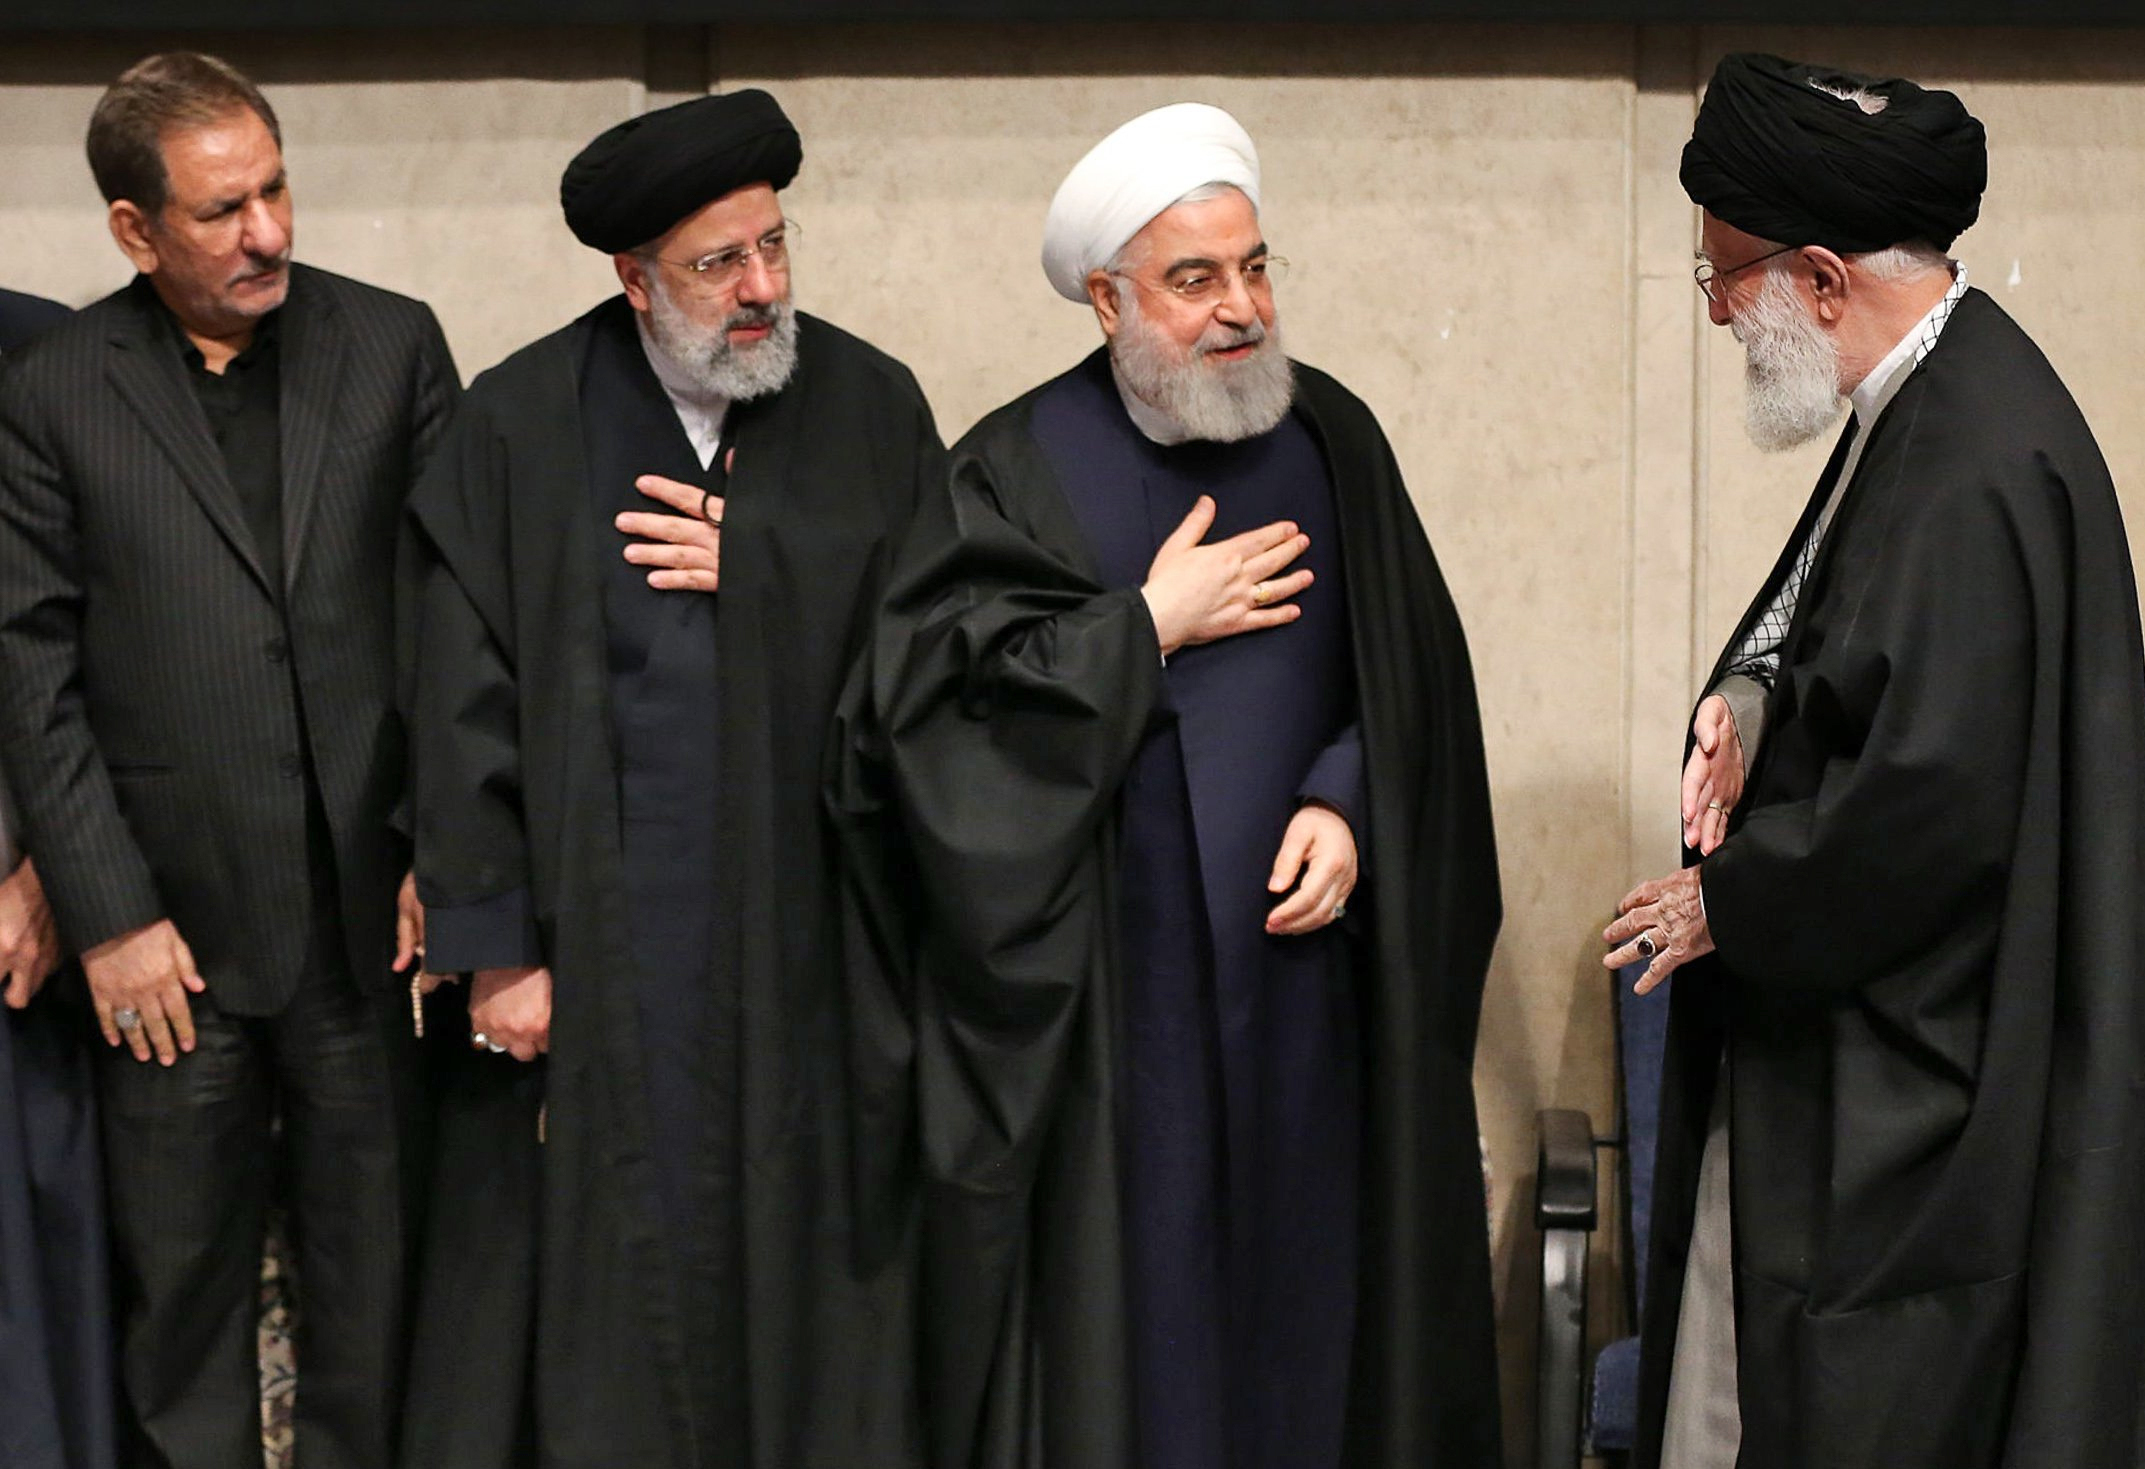 Irans Präsident Rouhani, das geistige Oberhaupt Khamenei und andere Spitzenpolitiker Irans am Rande einer Trauerfeier in Teheran | picture alliance/dpa/Iranian Presidency